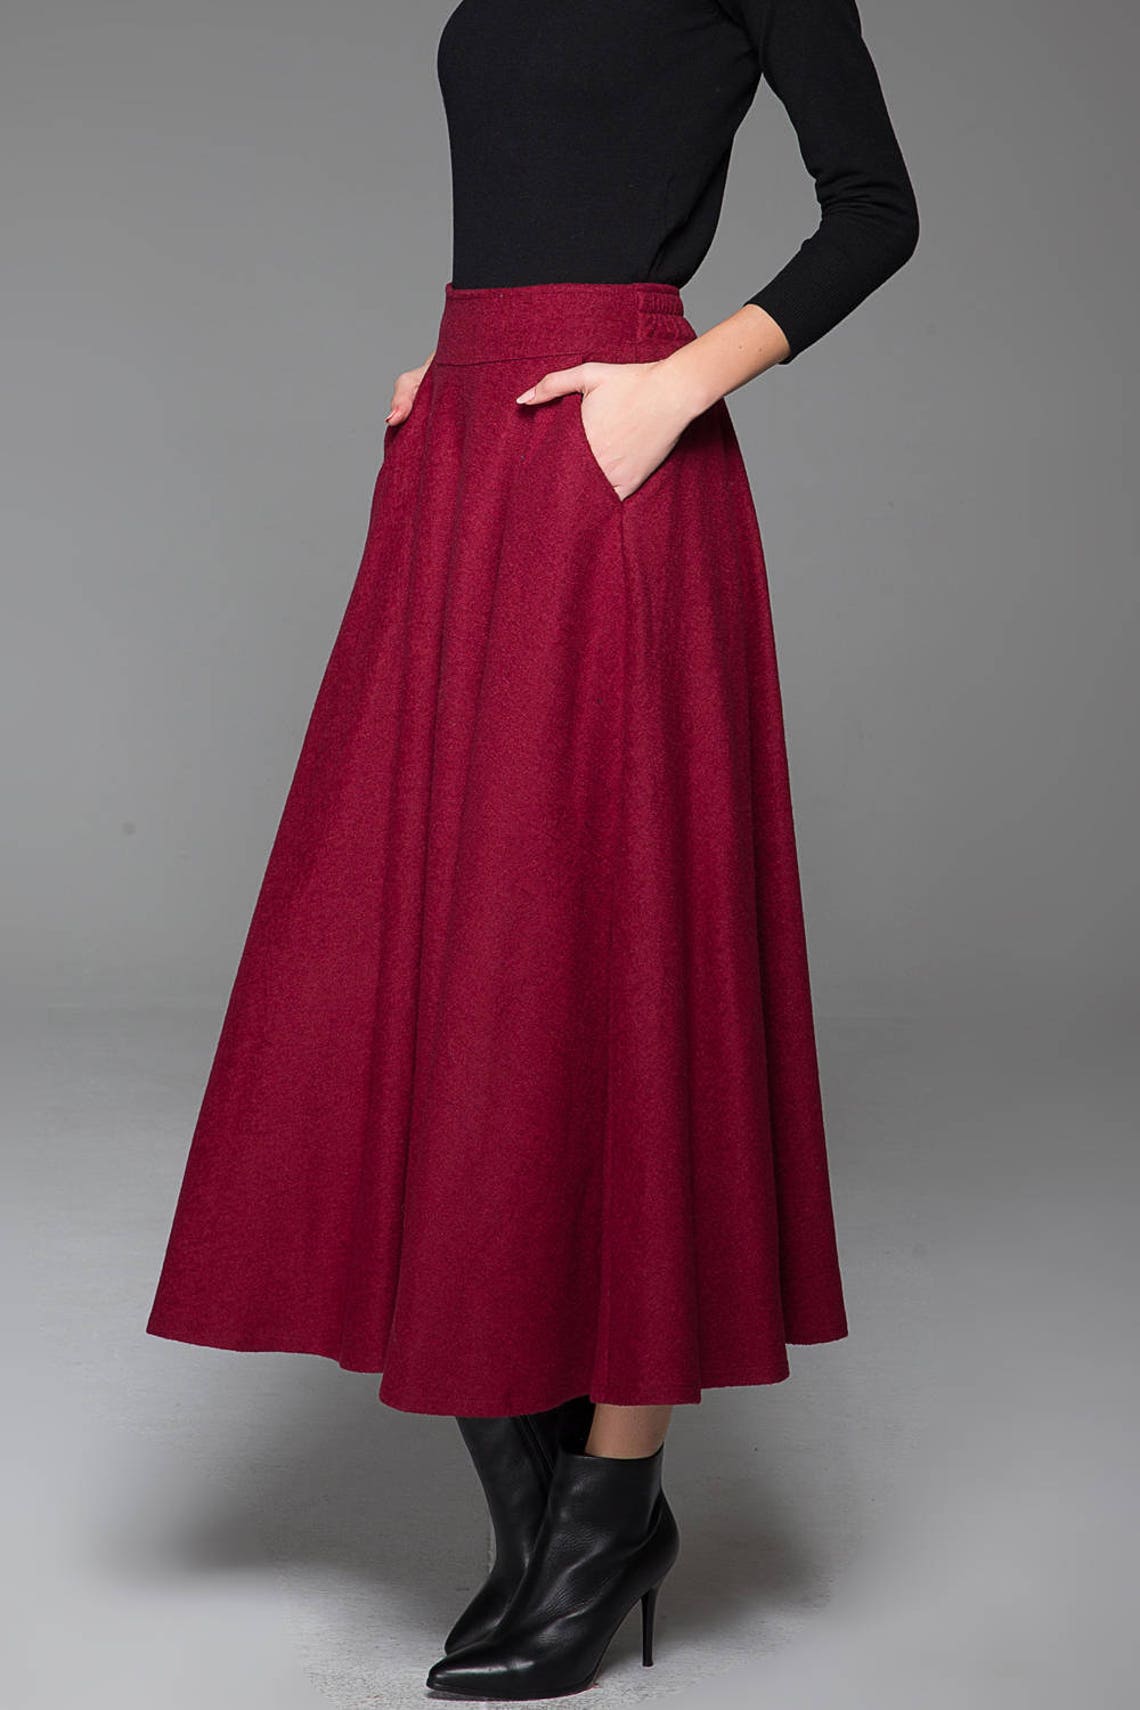 Wine red skirt wool skirt classic skirt winter skirt warm | Etsy